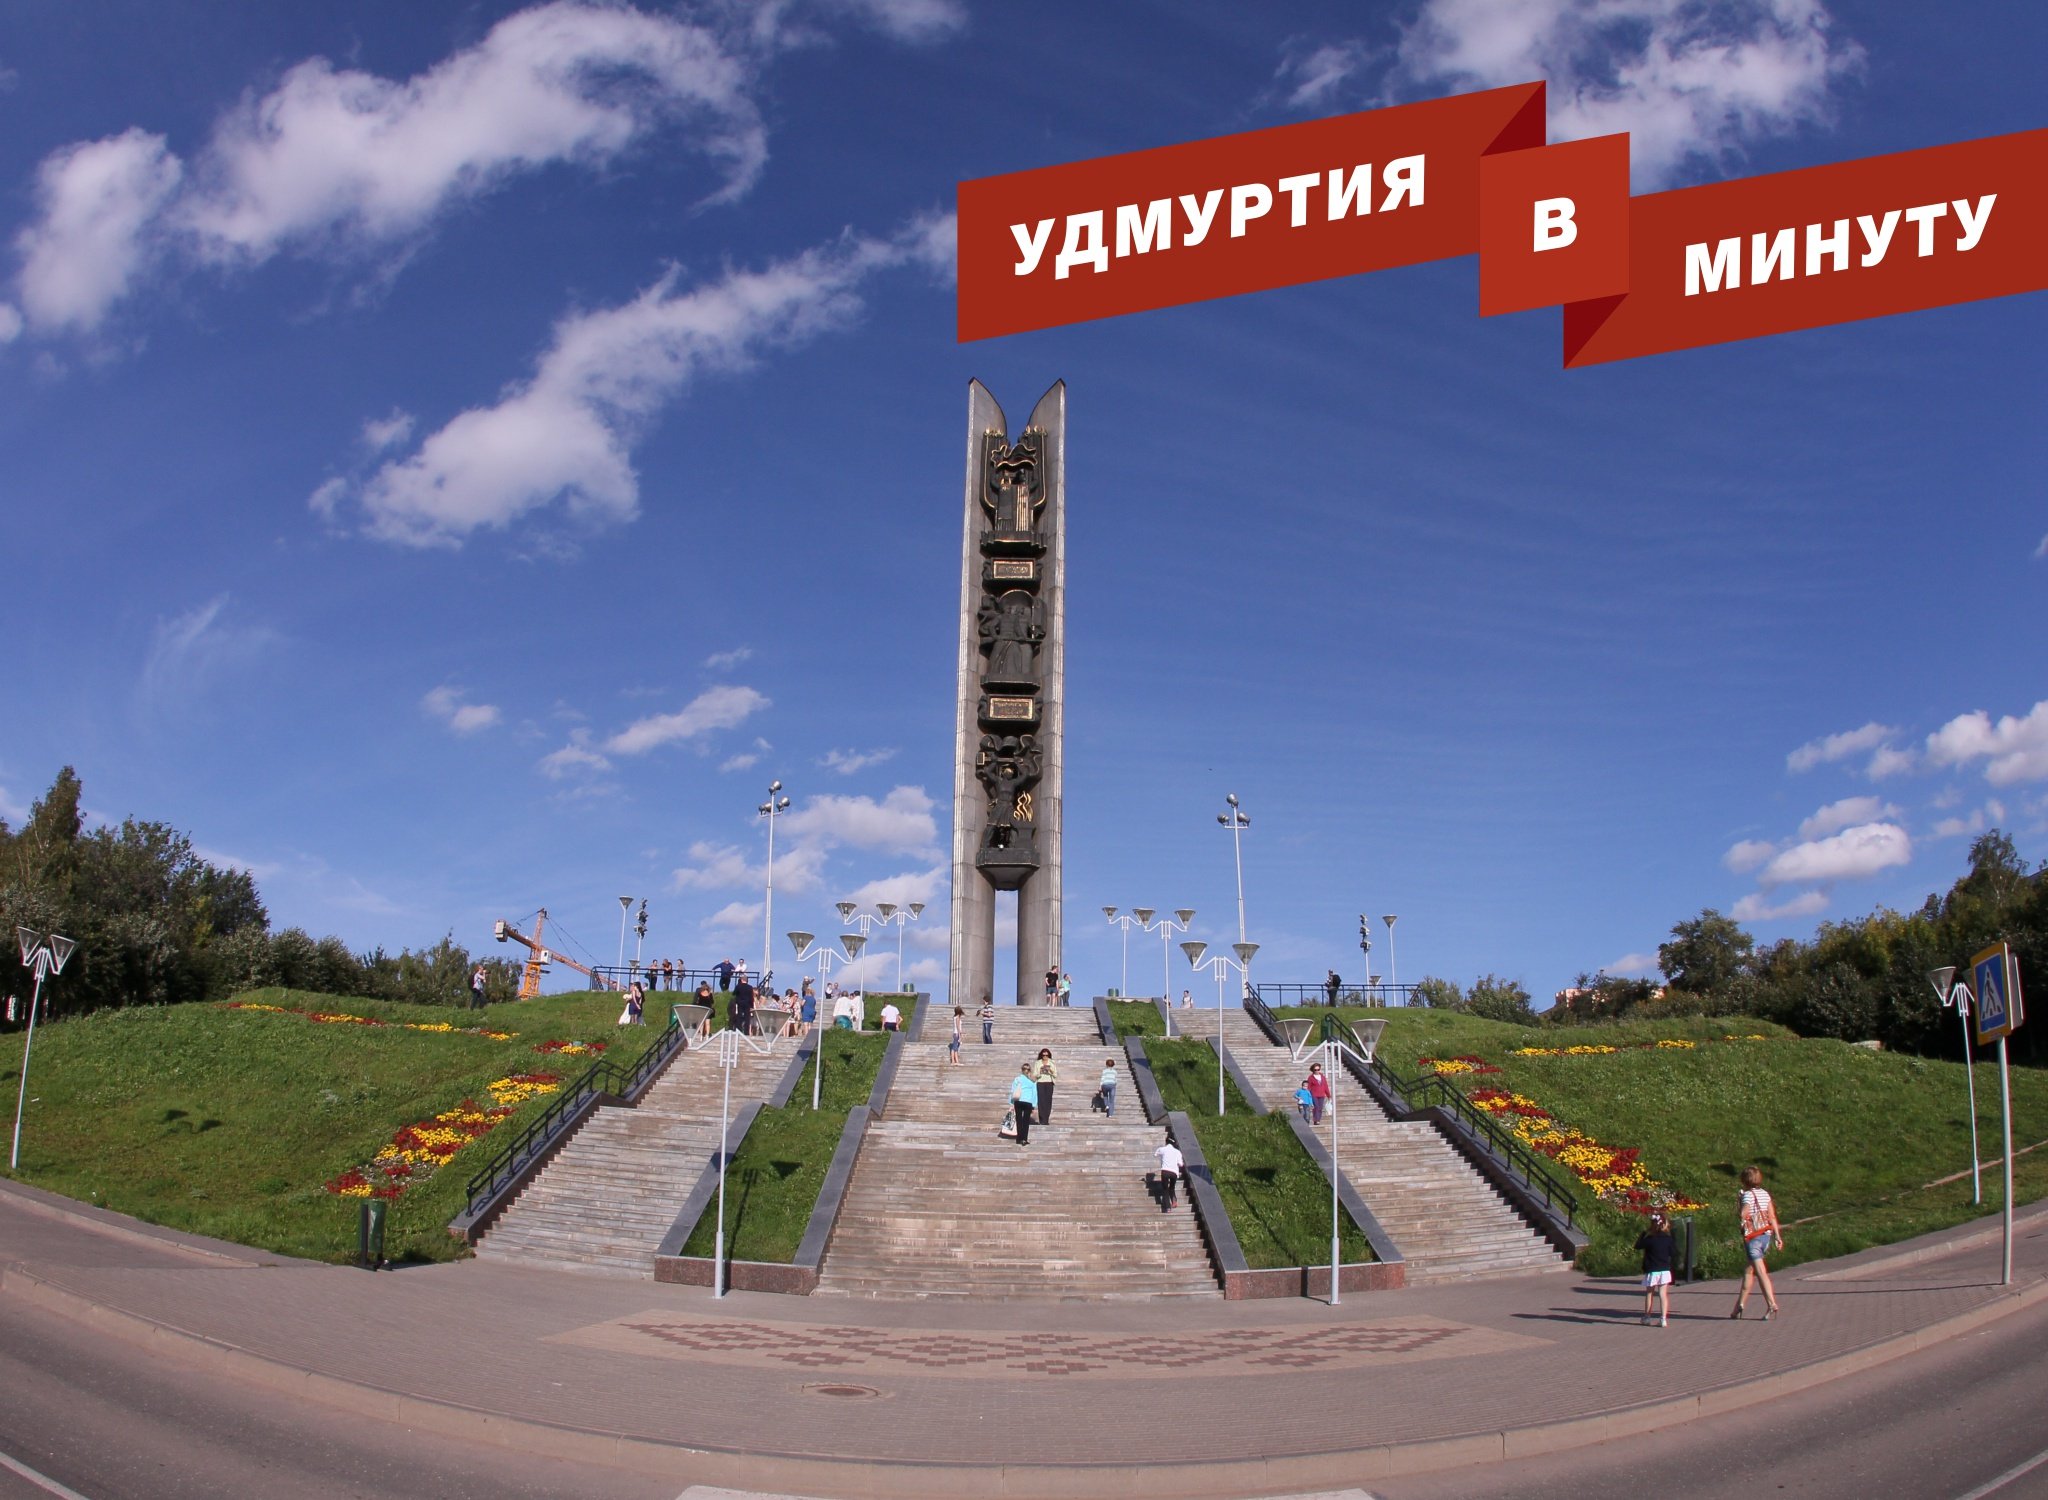 Удмуртия в минуту: ремонт проспекта Калашникова и экологический рейтинг Ижевска